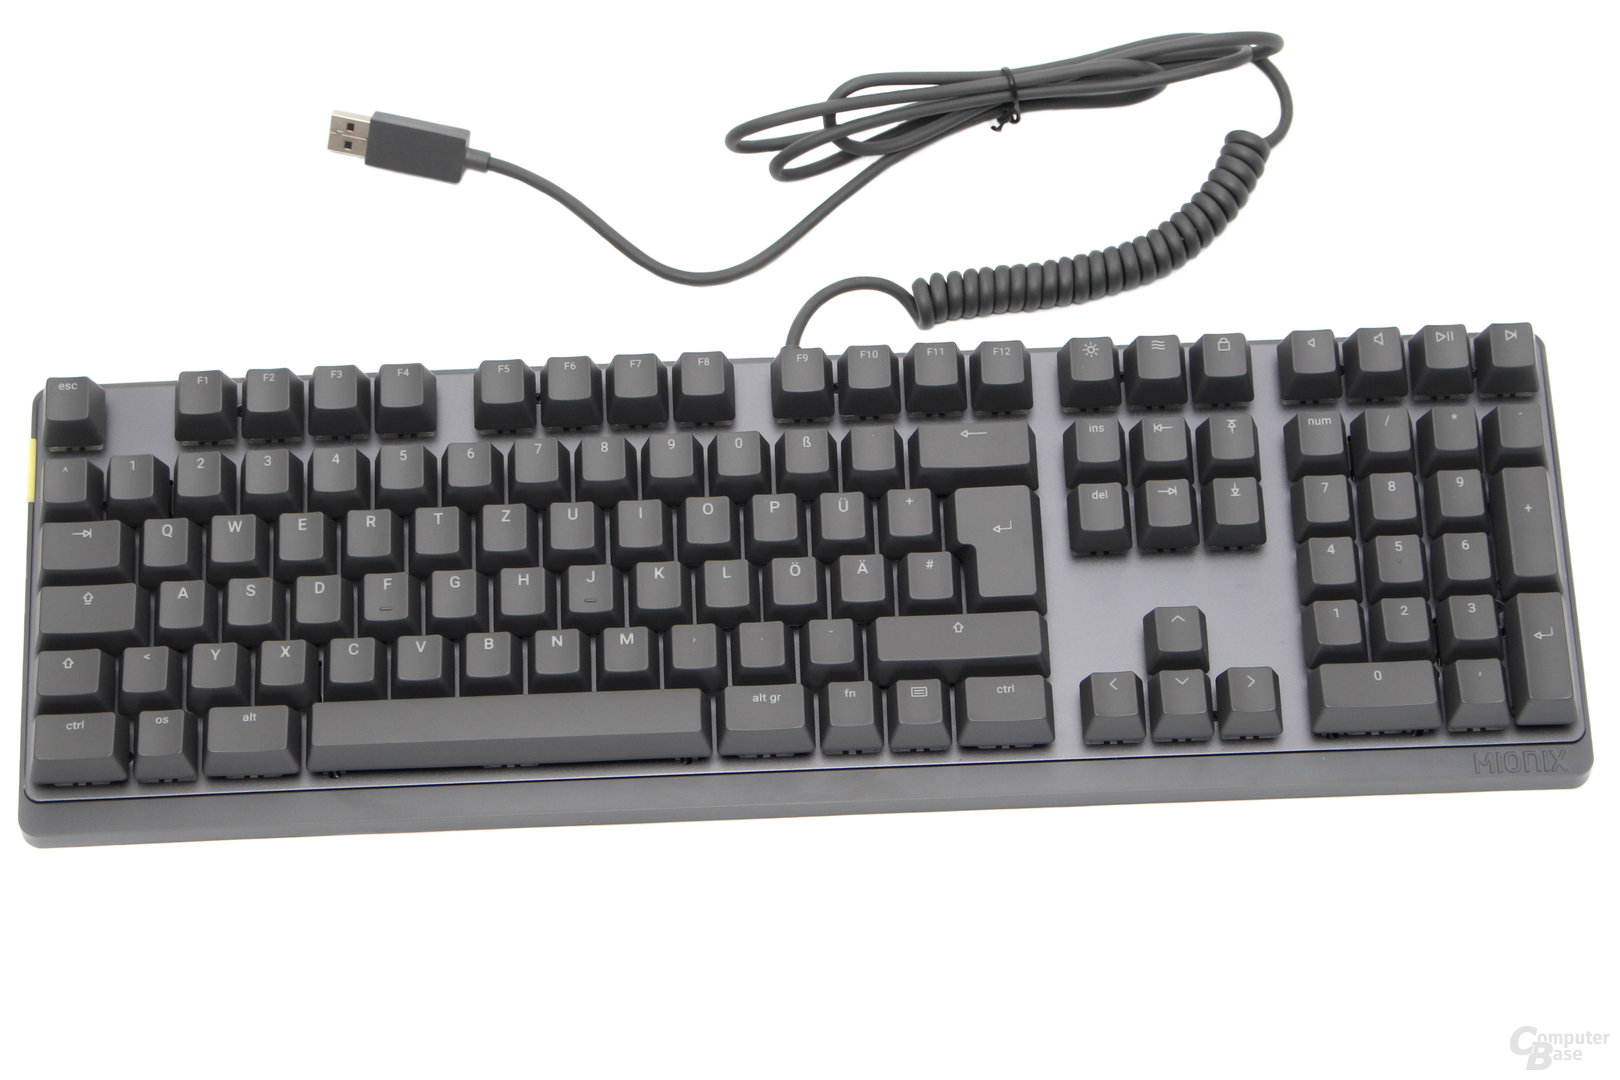 Die Tastatur weicht vom Standard-Layout ab